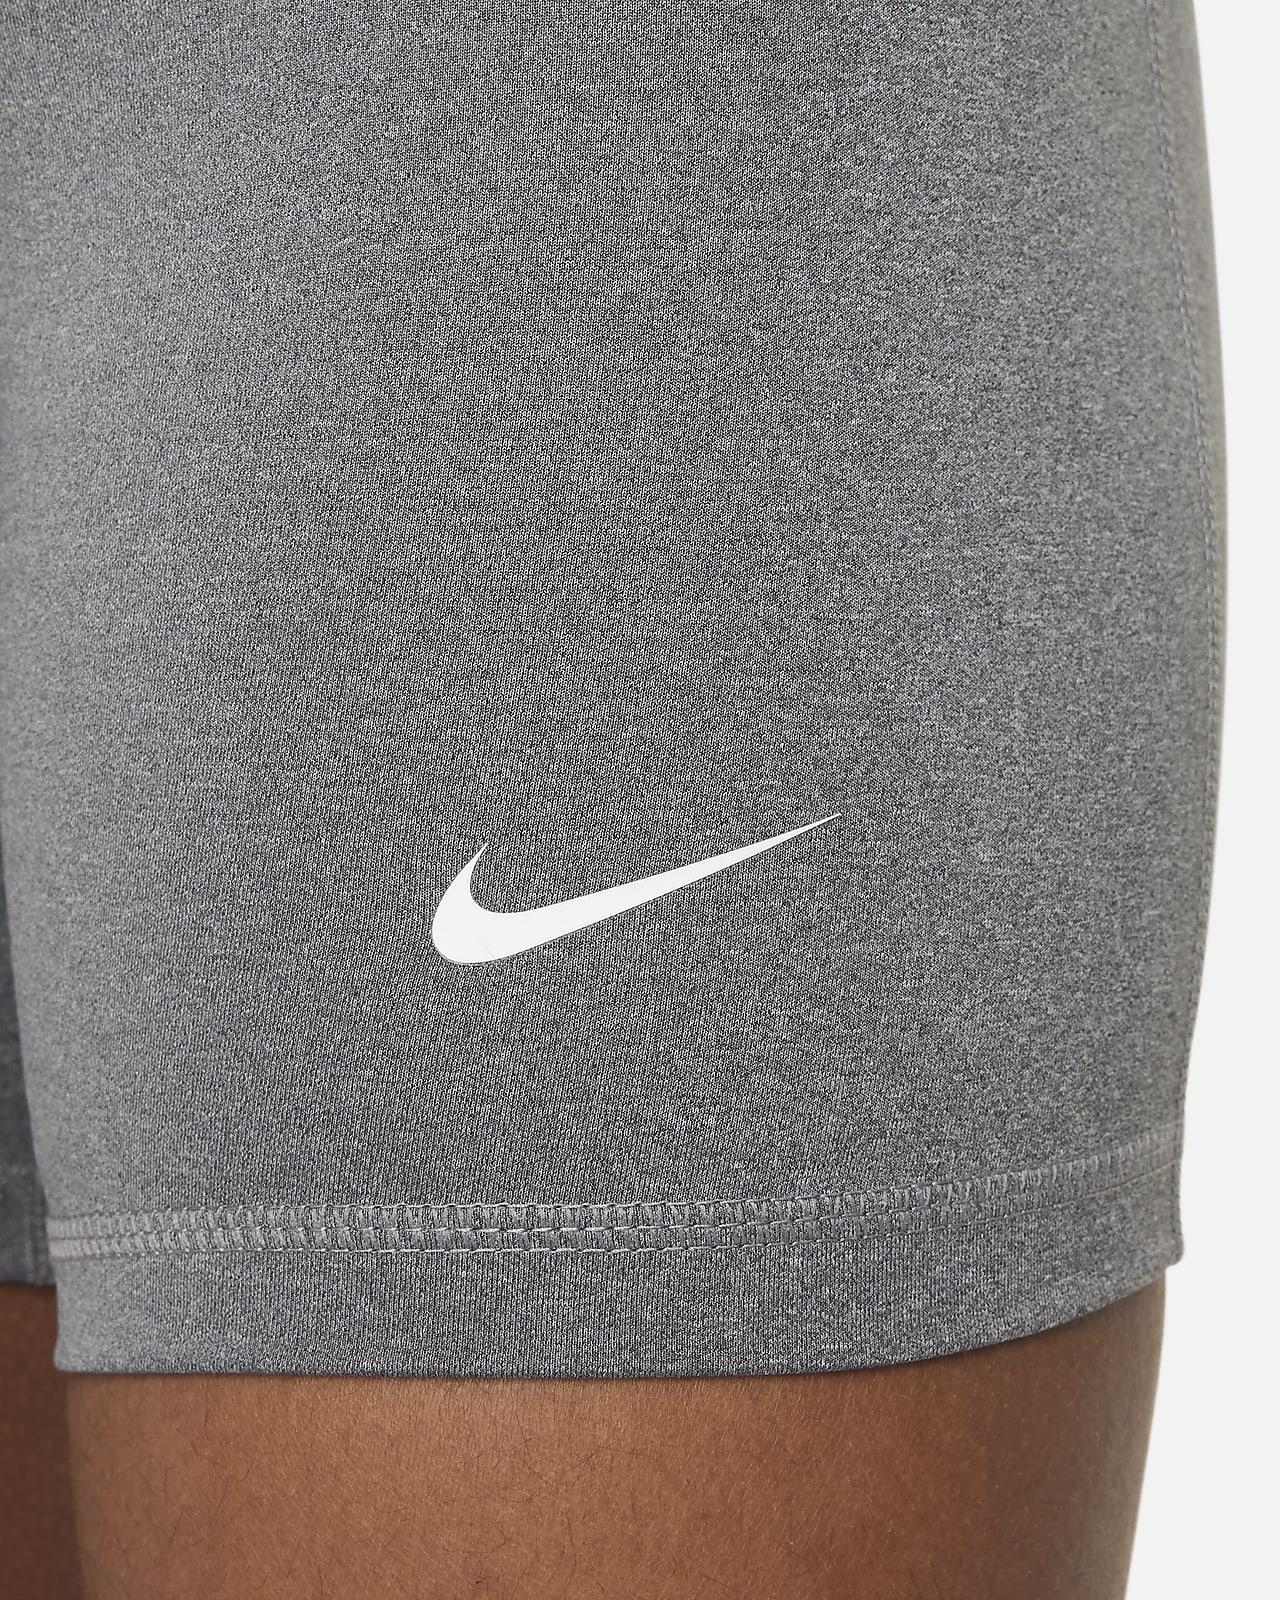 Nike Girls` Pro Training Shorts